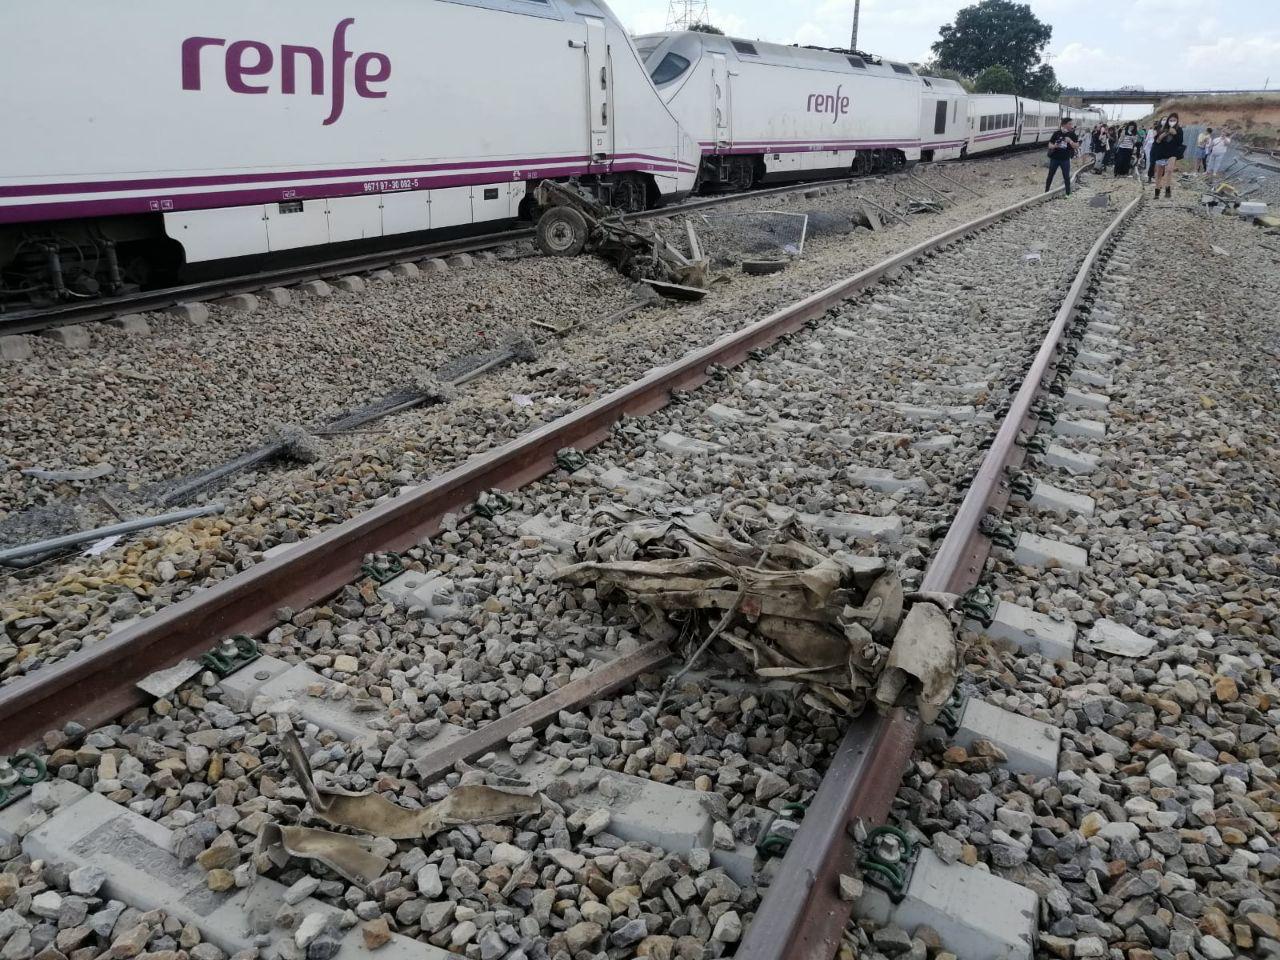 El tren Alvia accidentado con partes del coche en primer término y algunos pasajeros andando por las vías. Foto cedida